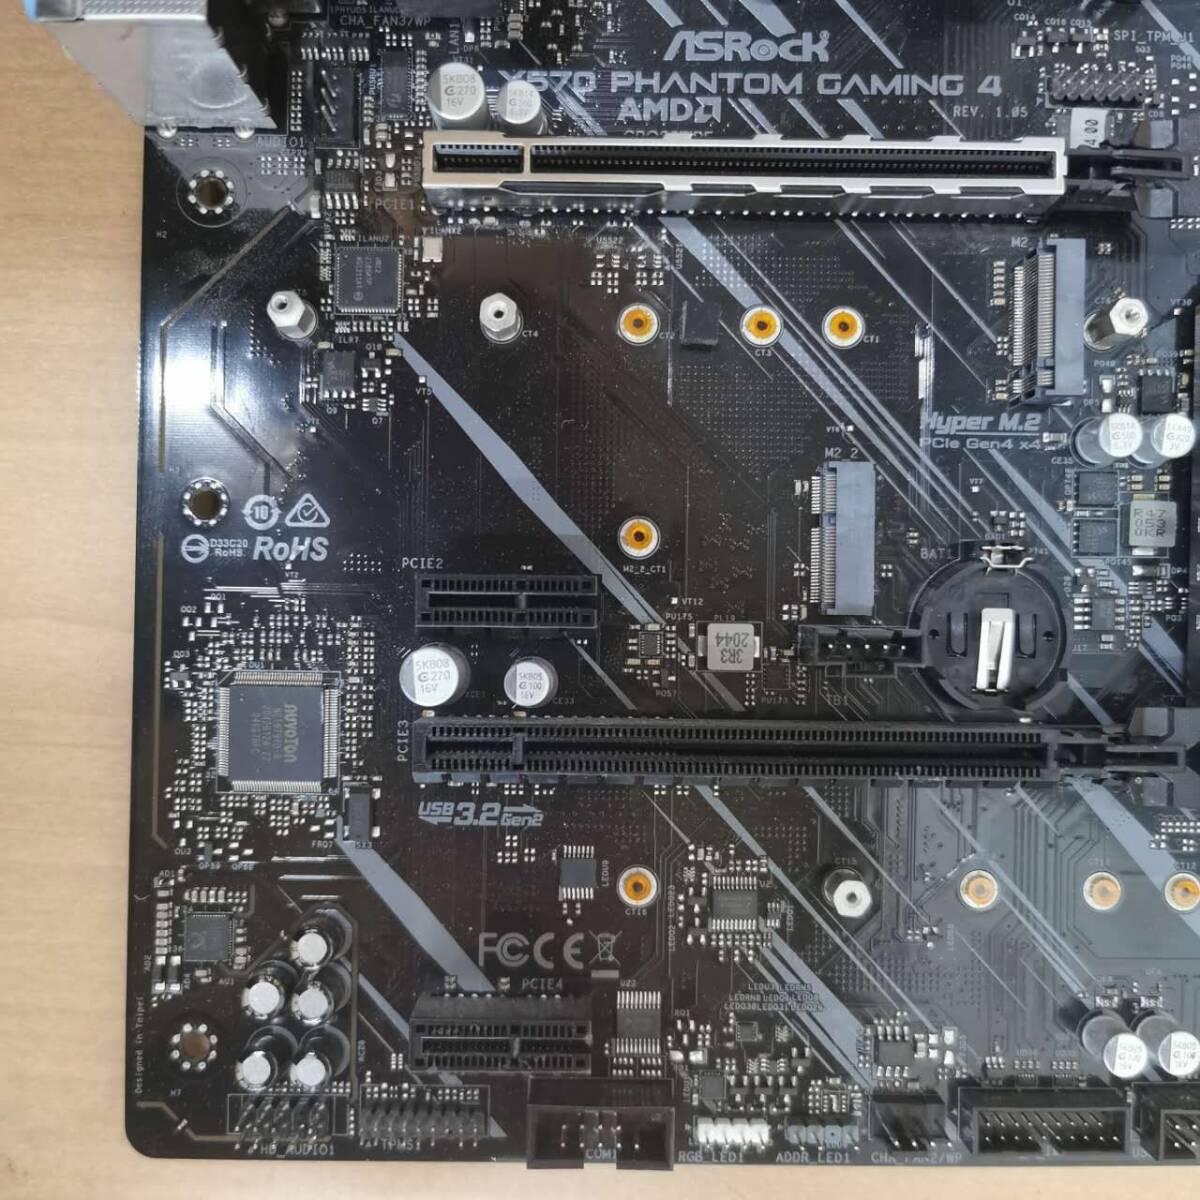 ASRock X570 phantom gaming 4/ATX материнская плата /AMD AM4 Ryzen соответствует /PC детали собственное производство PC DIY ремонт материал * Junk 